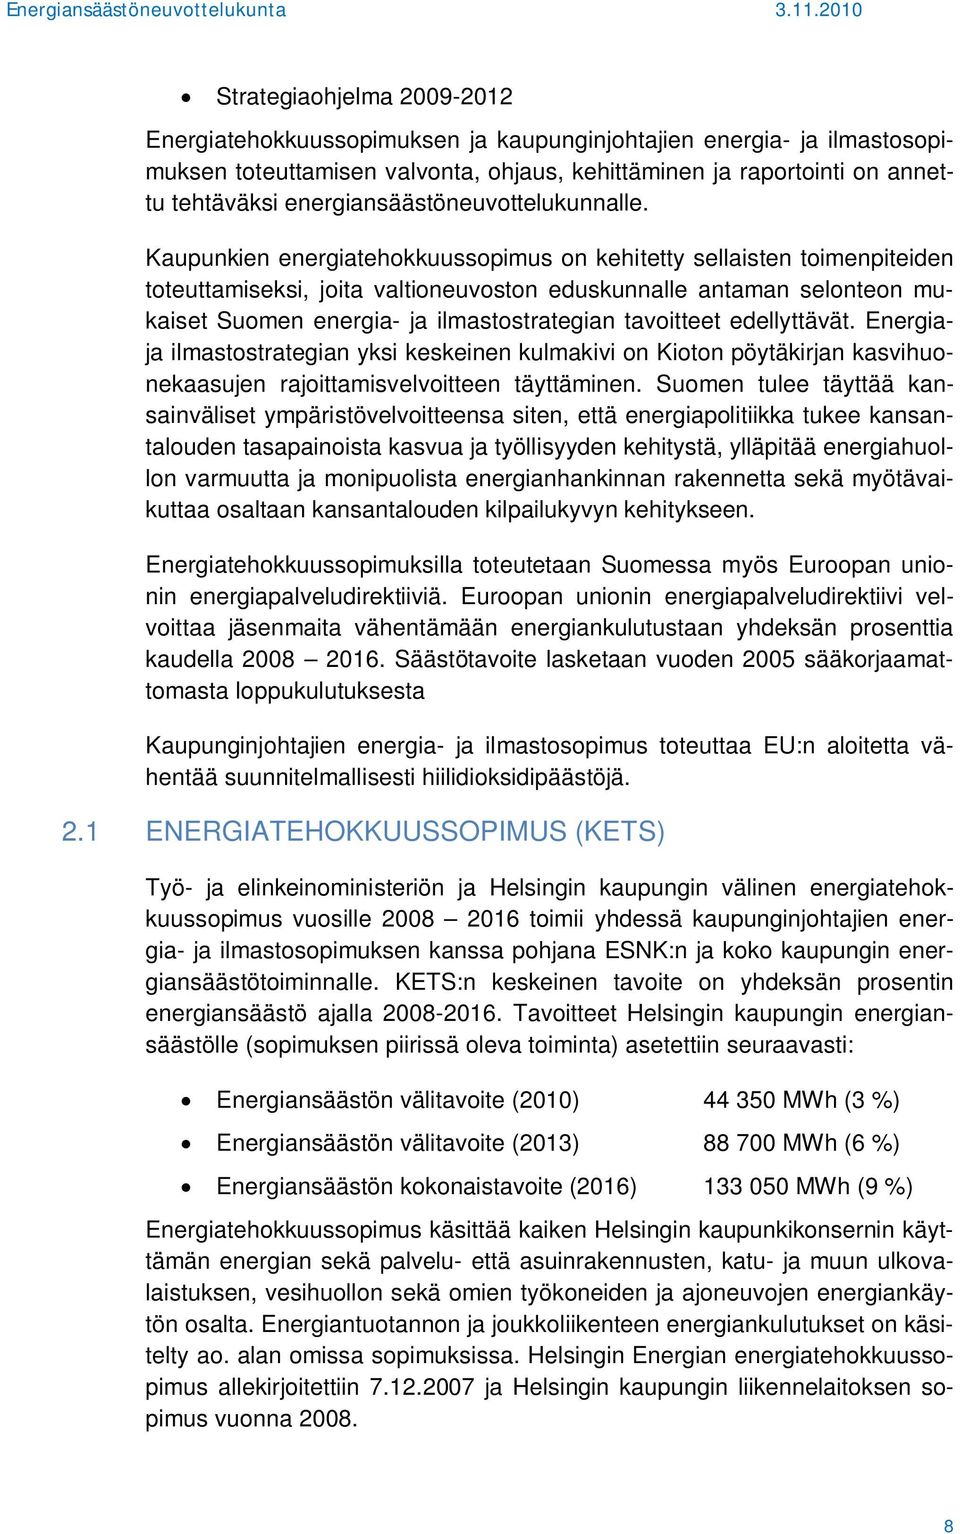 Kaupunkien energiatehokkuussopimus on kehitetty sellaisten toimenpiteiden toteuttamiseksi, joita valtioneuvoston eduskunnalle antaman selonteon mukaiset Suomen energia- ja ilmastostrategian